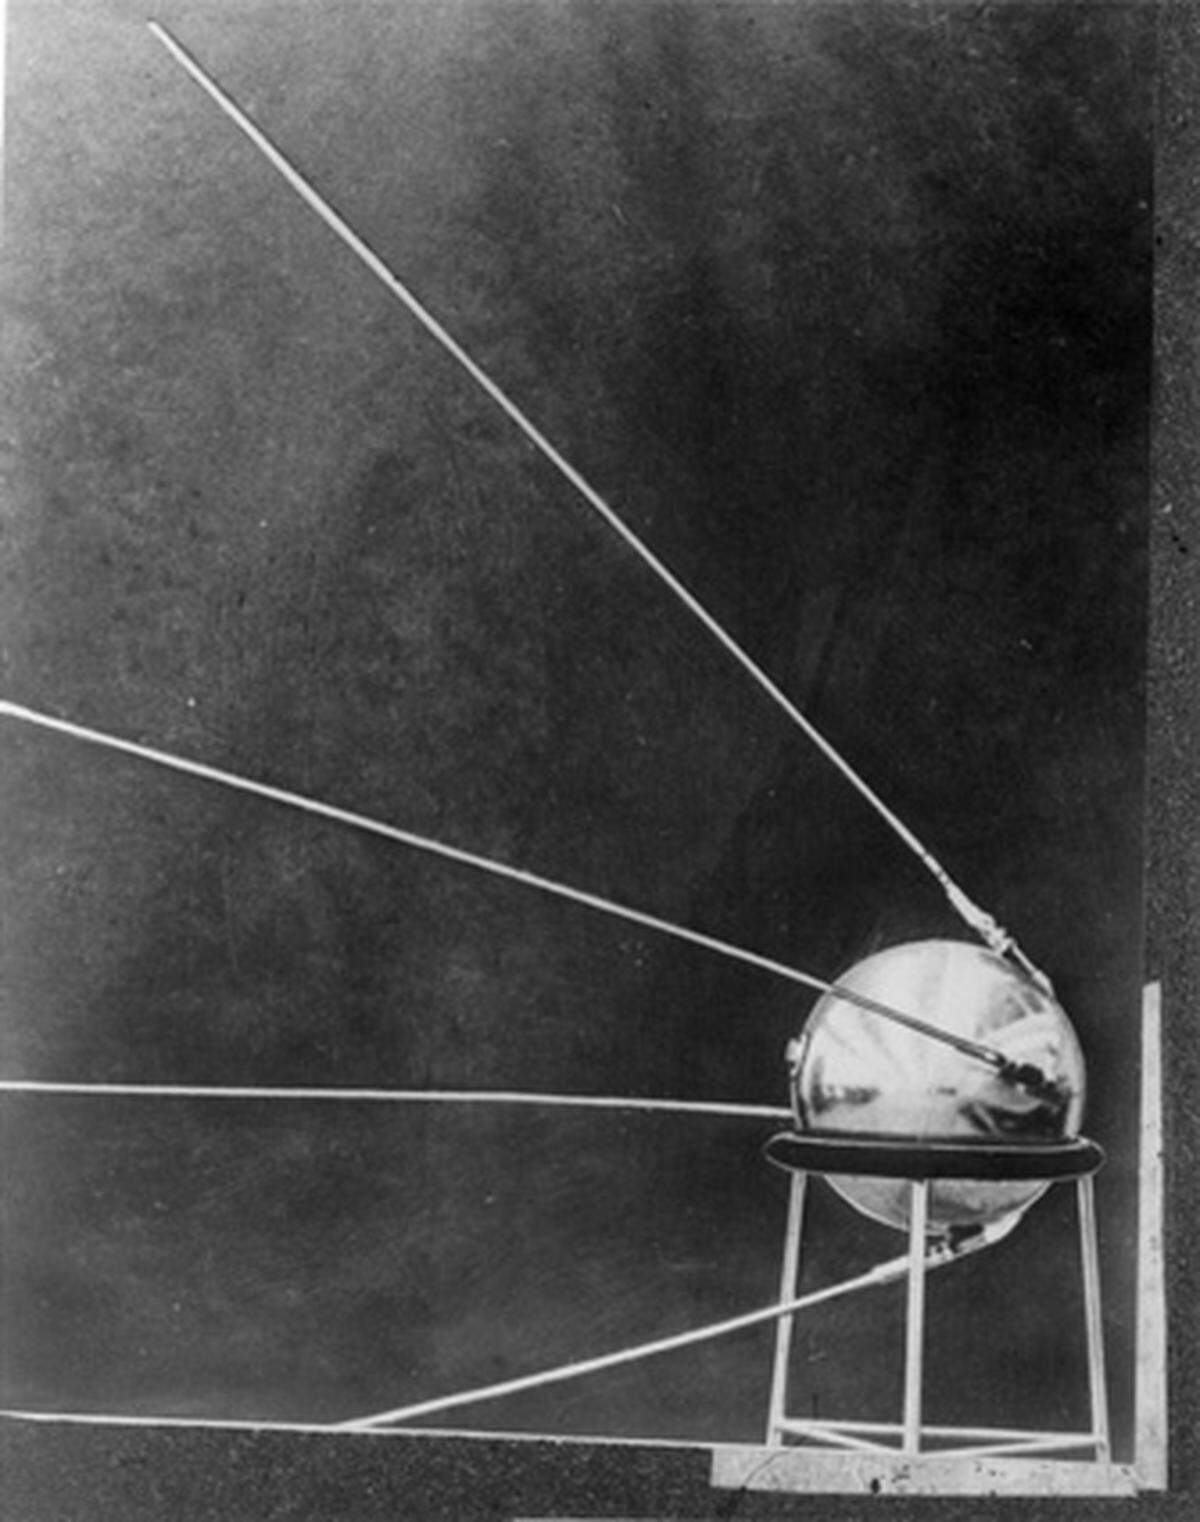 Den ersten "Sieg" im Wettrennen konnten die Russen erringen: Sputnik 1 (Russisch für "Begleiter" oder auch "Satellit") erreichte m 4. Oktober 1957 die Erdumlaufbahn und war gleichzeitig der Startschuss für die sowjetische Raumfahrt. Vom auch heute noch eingesetzten Weltraumbahnhof Baikonur aus wurde die 58 Zentimeter durchmessende und 83,6 Kilogramm schwere Kugel ins All geschossen. 21 Tage lang sendete "Sputnik 1" ein Kurzwellensignal und umrundete die Erde alle 96 Minuten. Nach 92 Tagen verglühte er in der Atmosphäre.